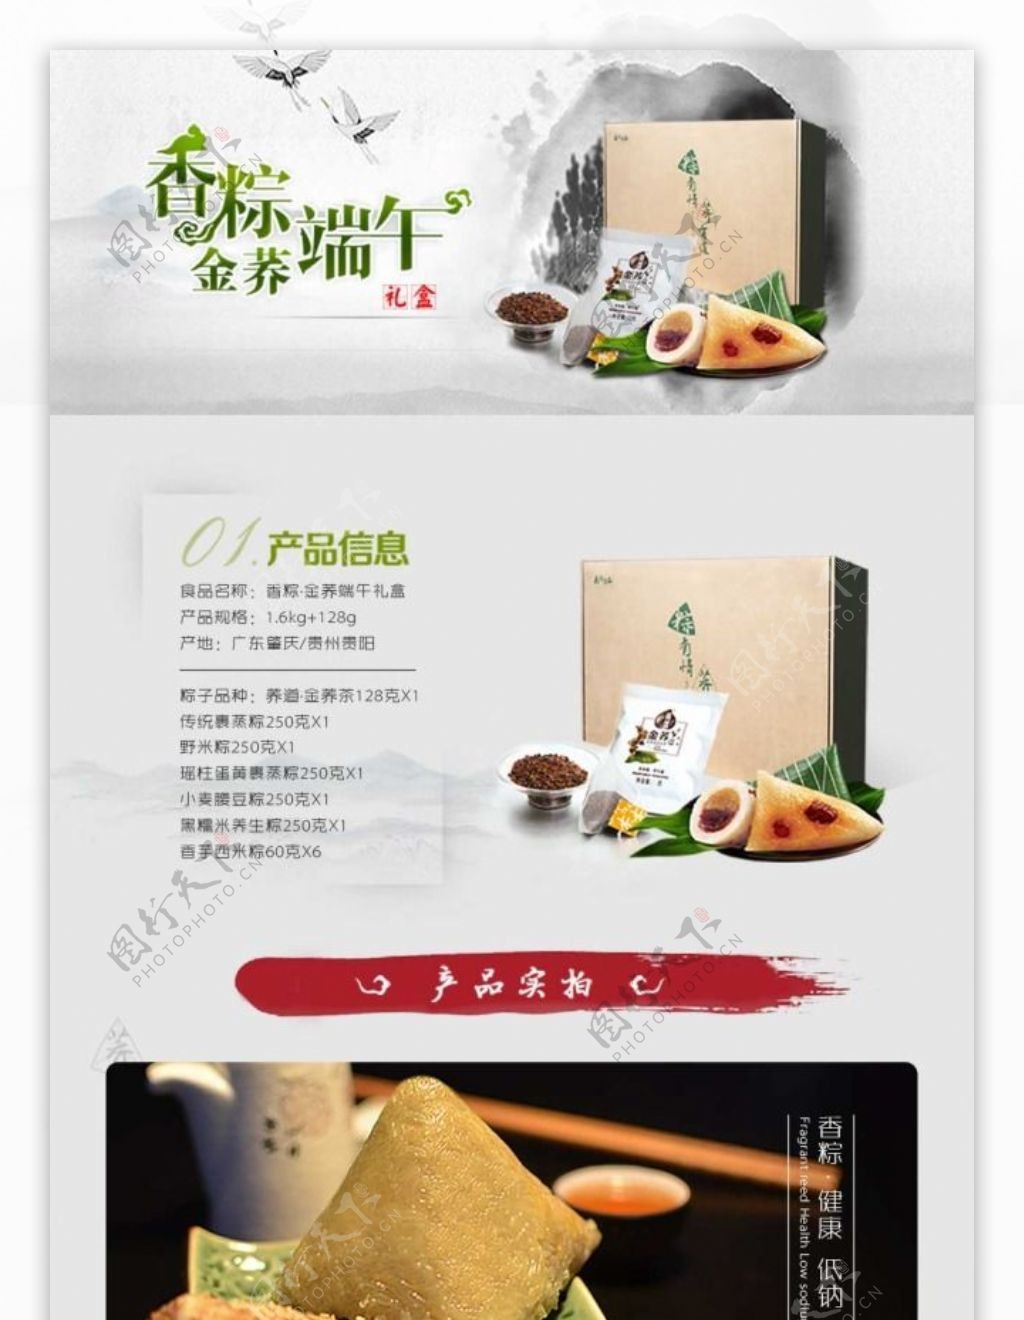 香粽金荞端午礼盒淘宝详情页模板PSD